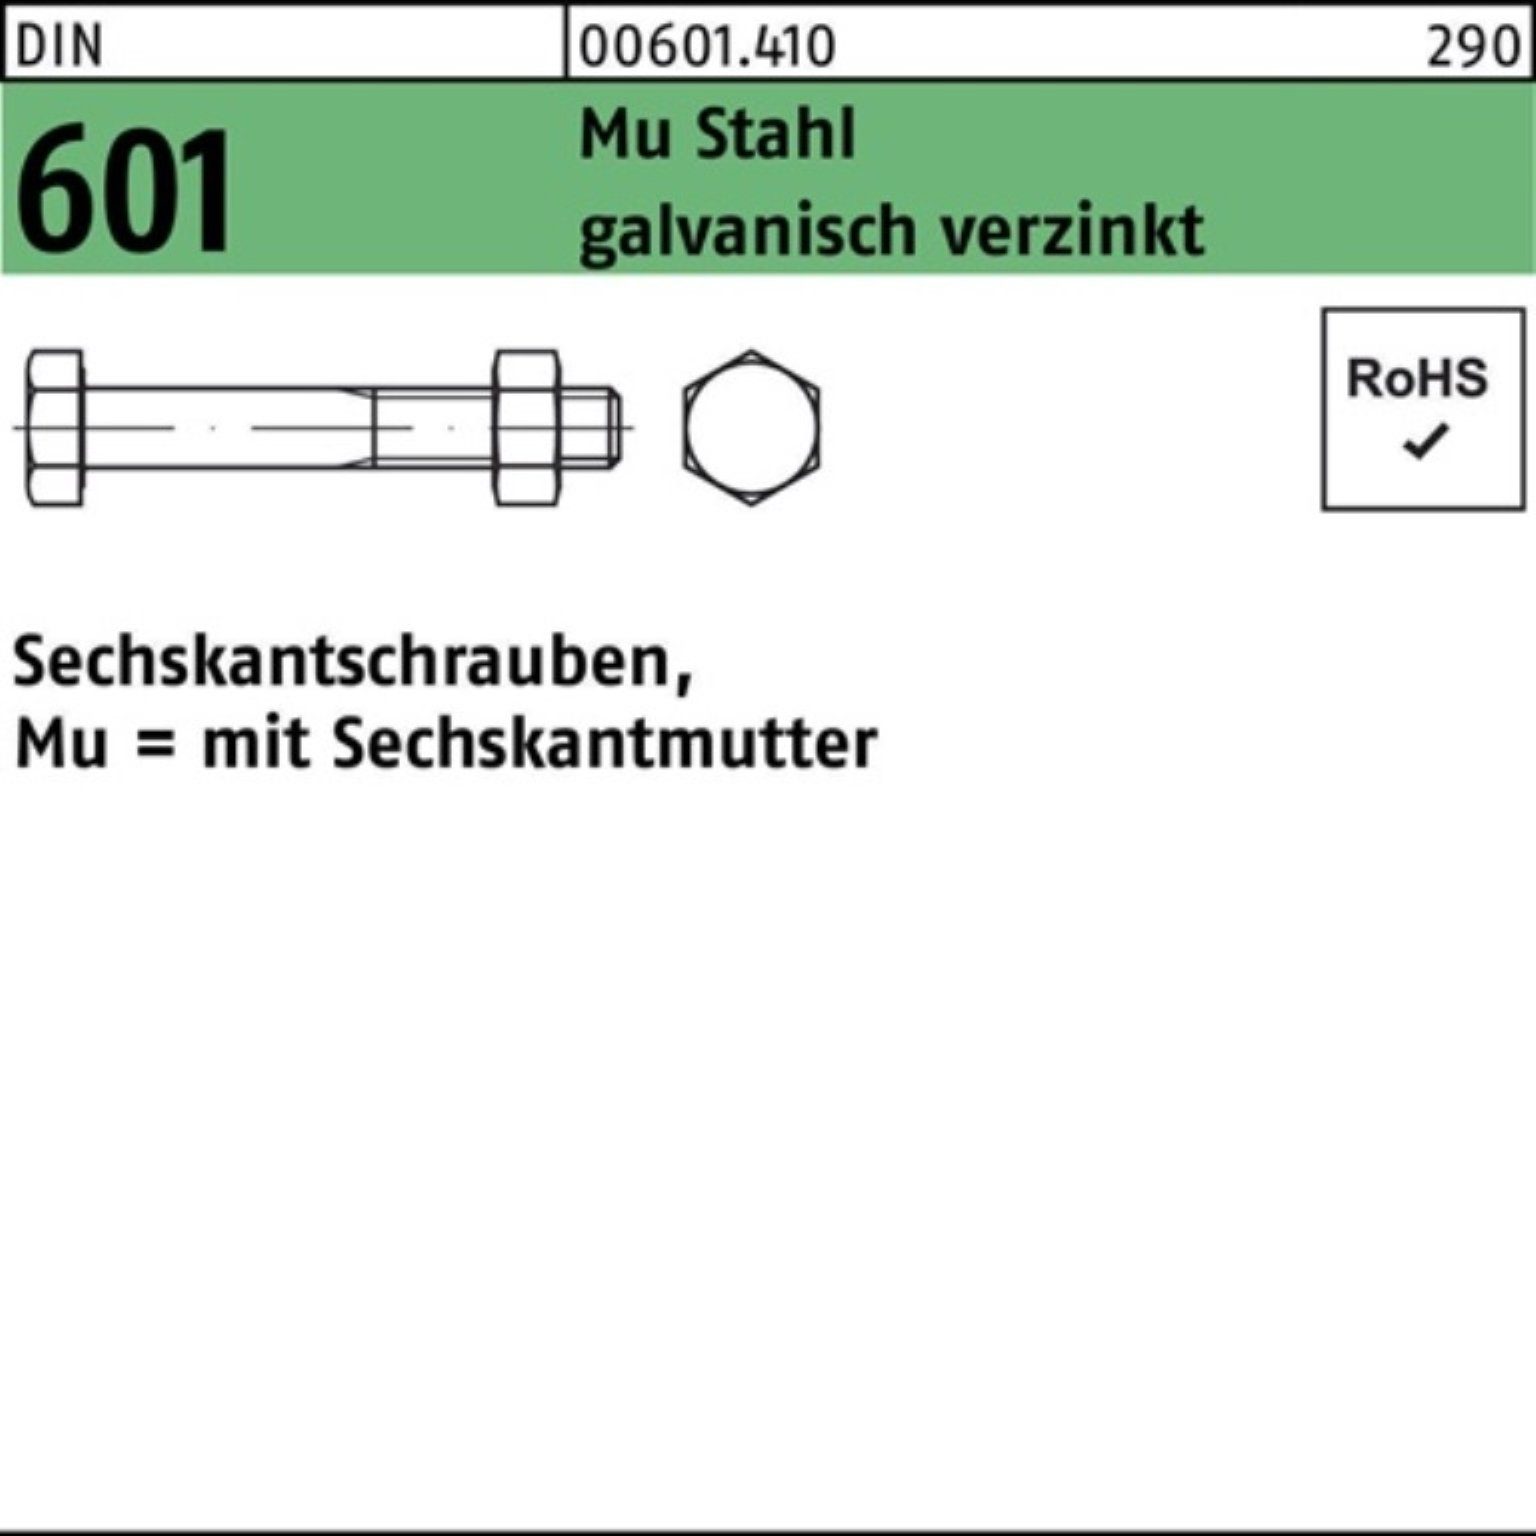 Reyher Sechskantmutter 200er Pack Sechskantschraube DIN 601 Sechskantmutter M8x16 Mu Stahl 4.